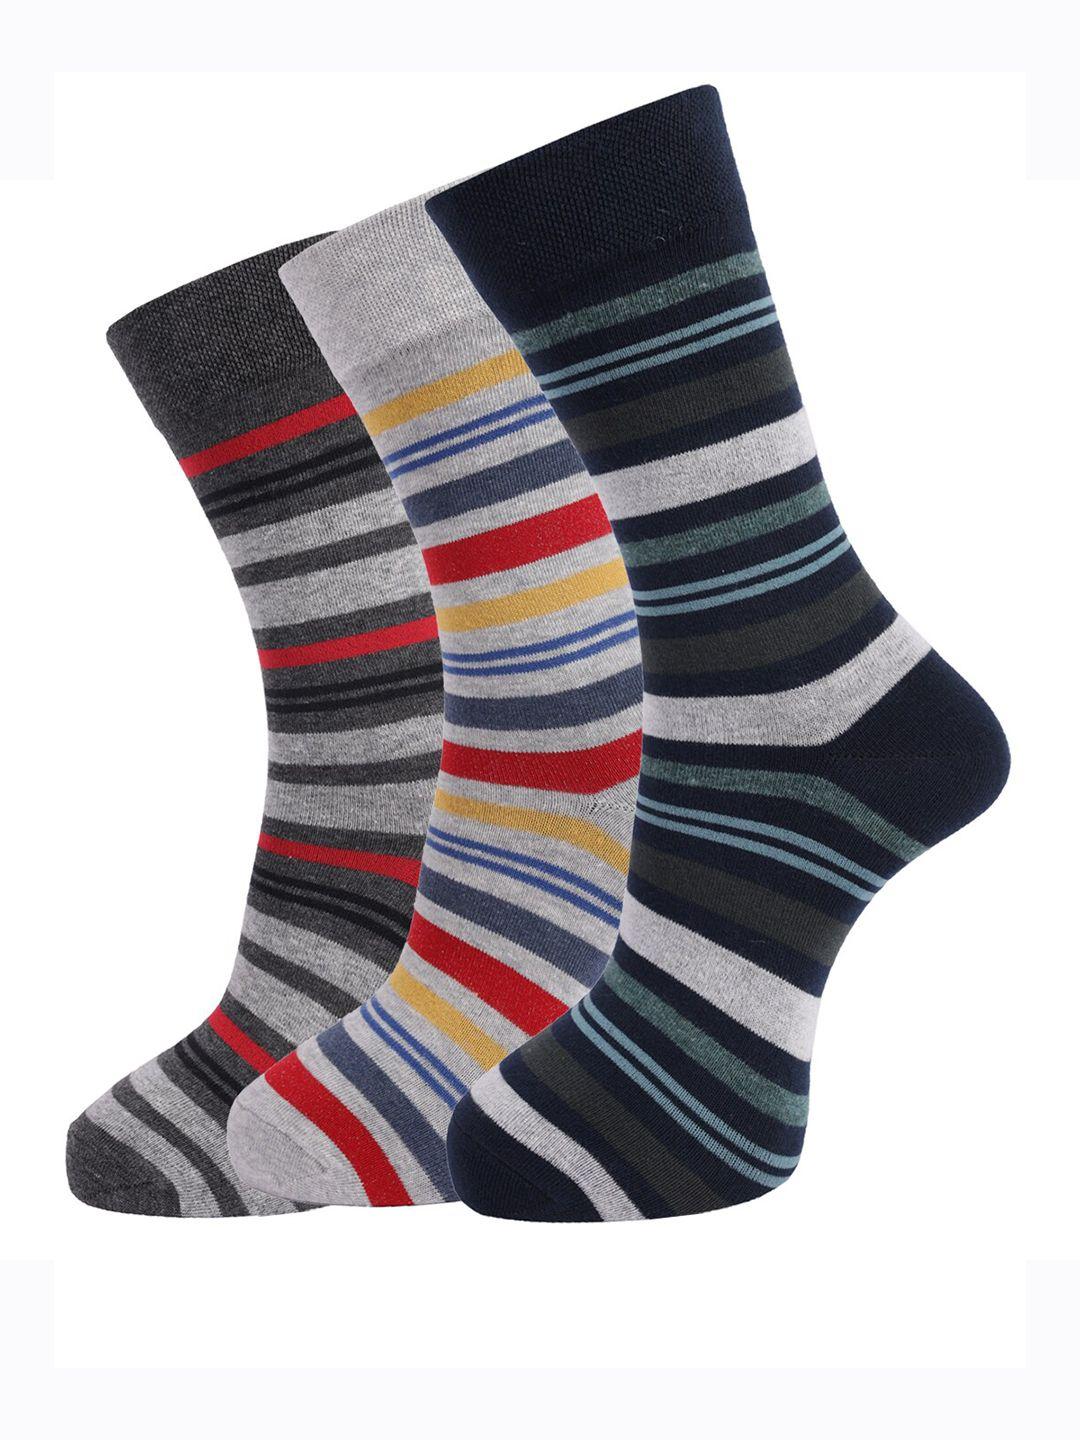 dollar-socks-men-pack-of-3-assorted-above-ankle-length-cotton-socks